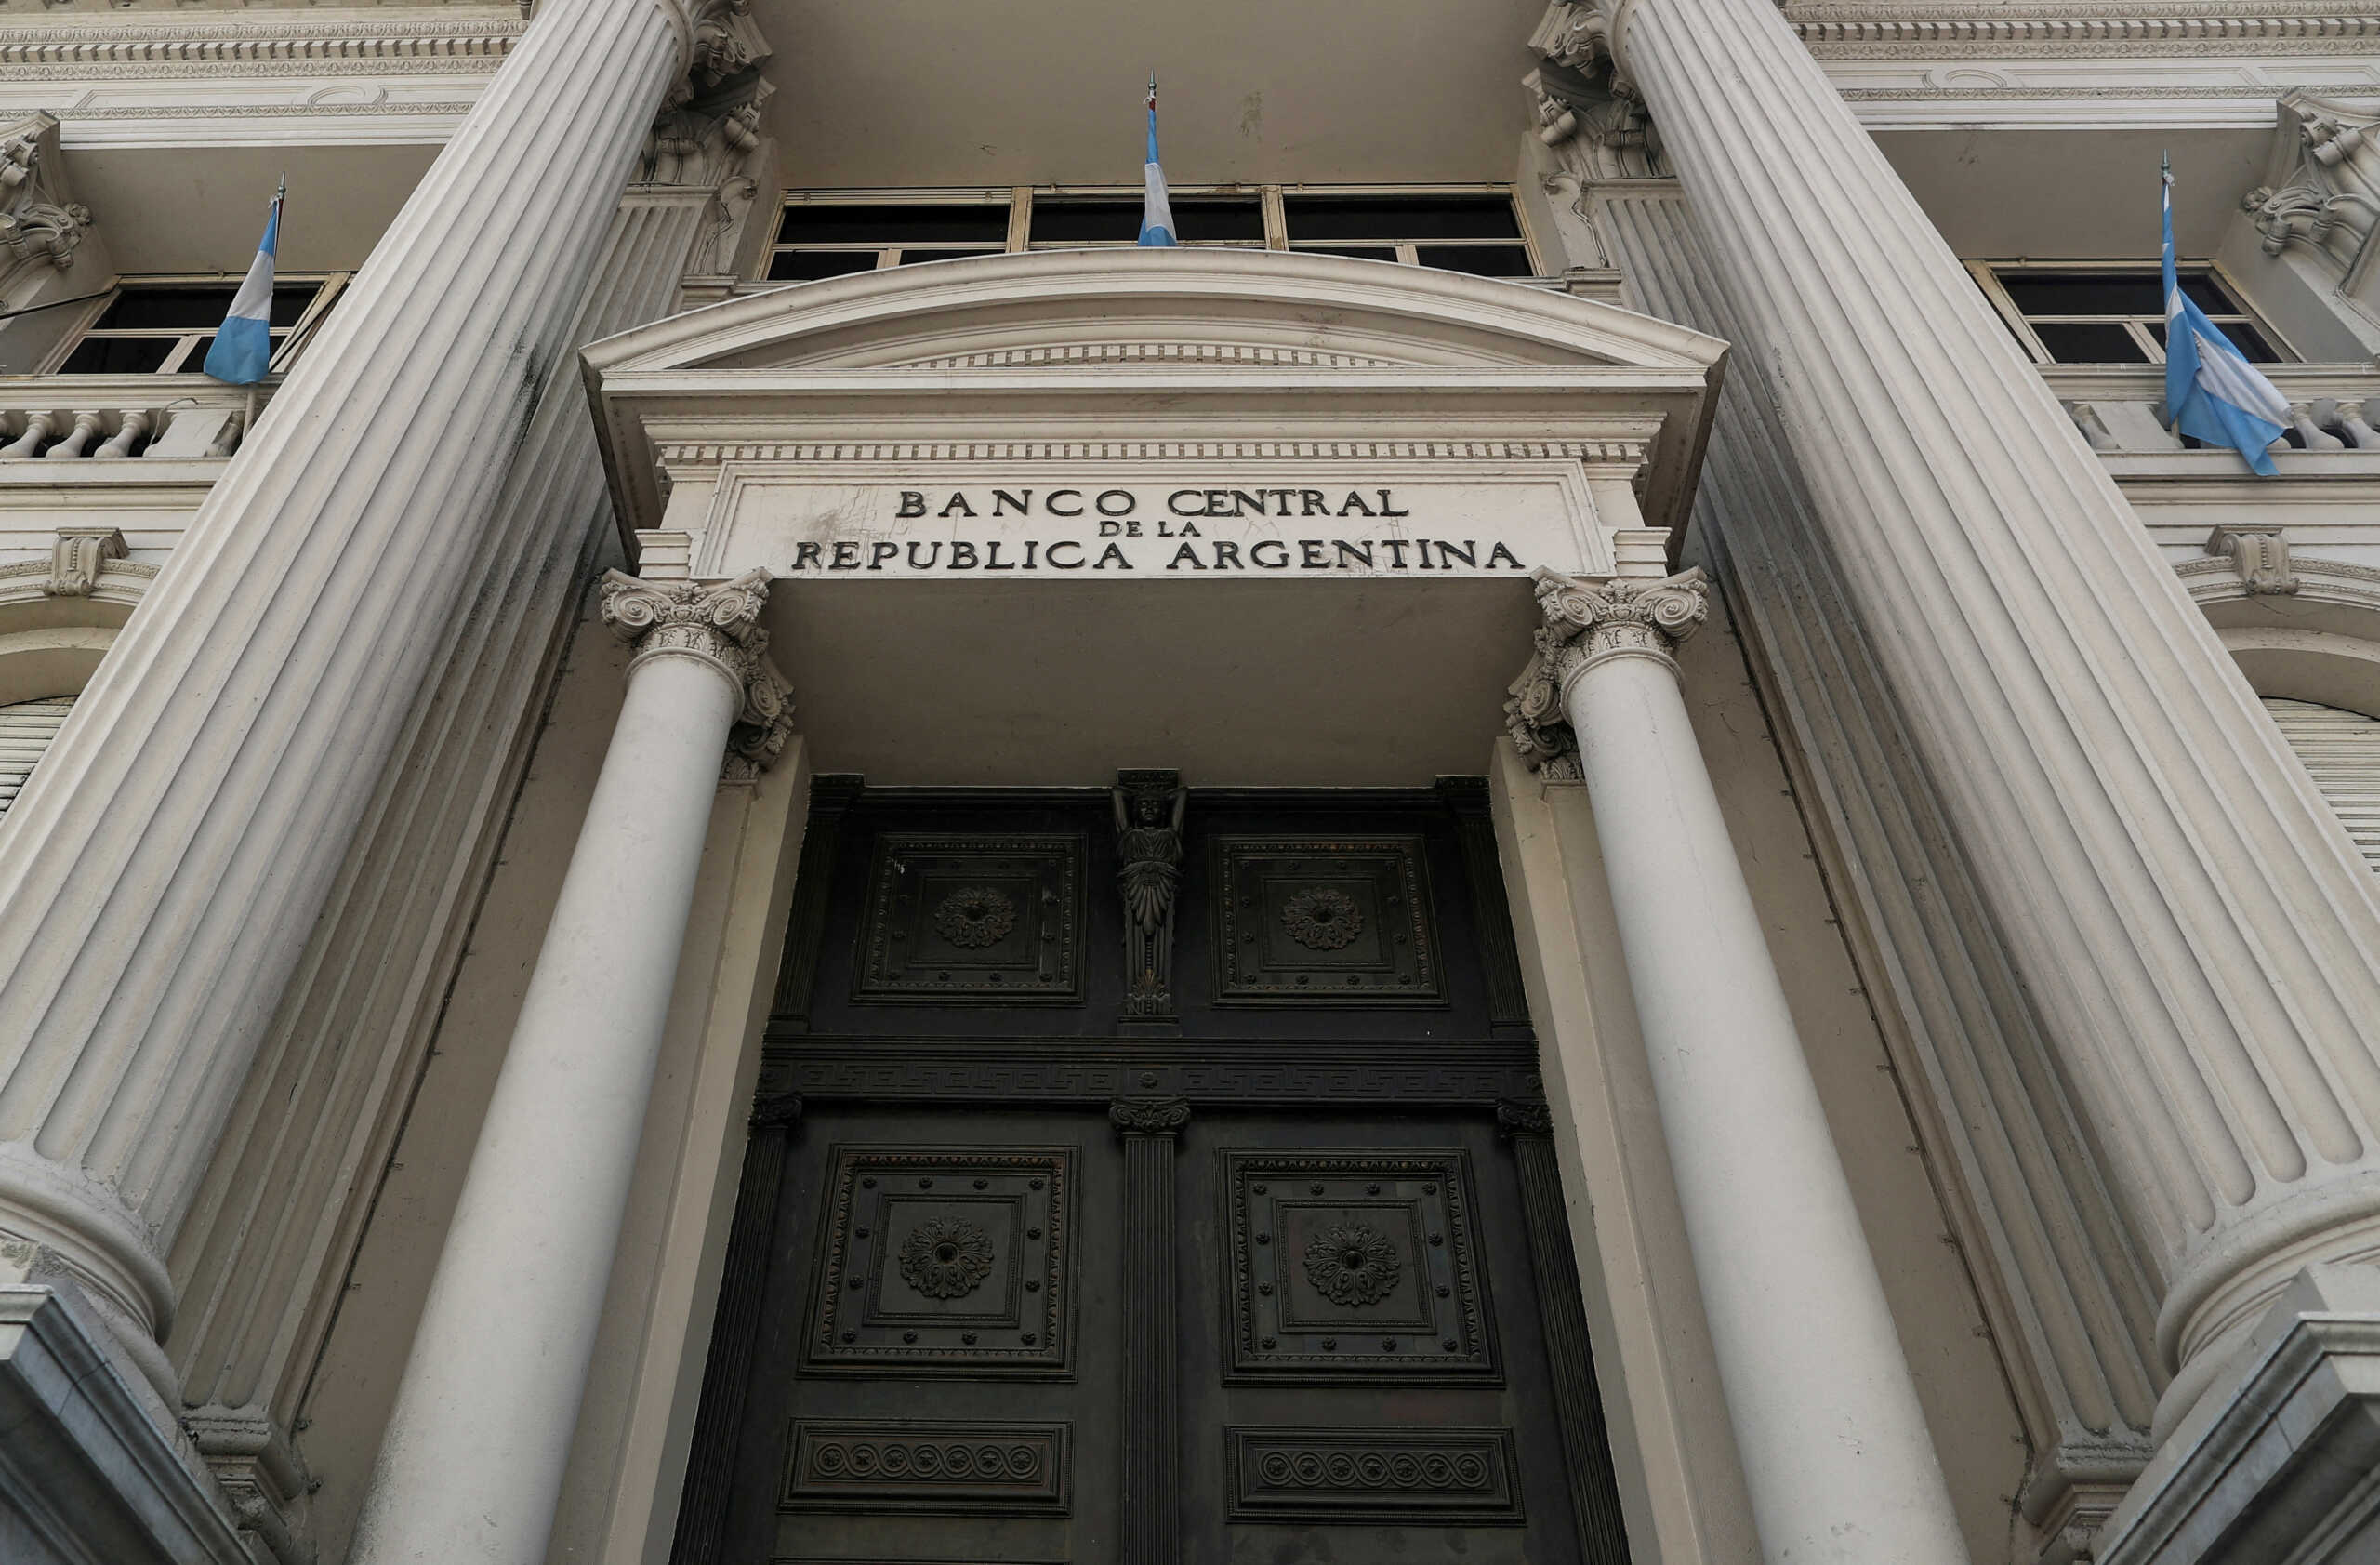 Αργεντινή: «Το κλείσιμο της Κεντρικής Τράπεζας δεν είναι διαπραγματεύσιμο» δήλωσε ο νεοεκλεγείς πρόεδρος Χαβιέρ Μιλέι